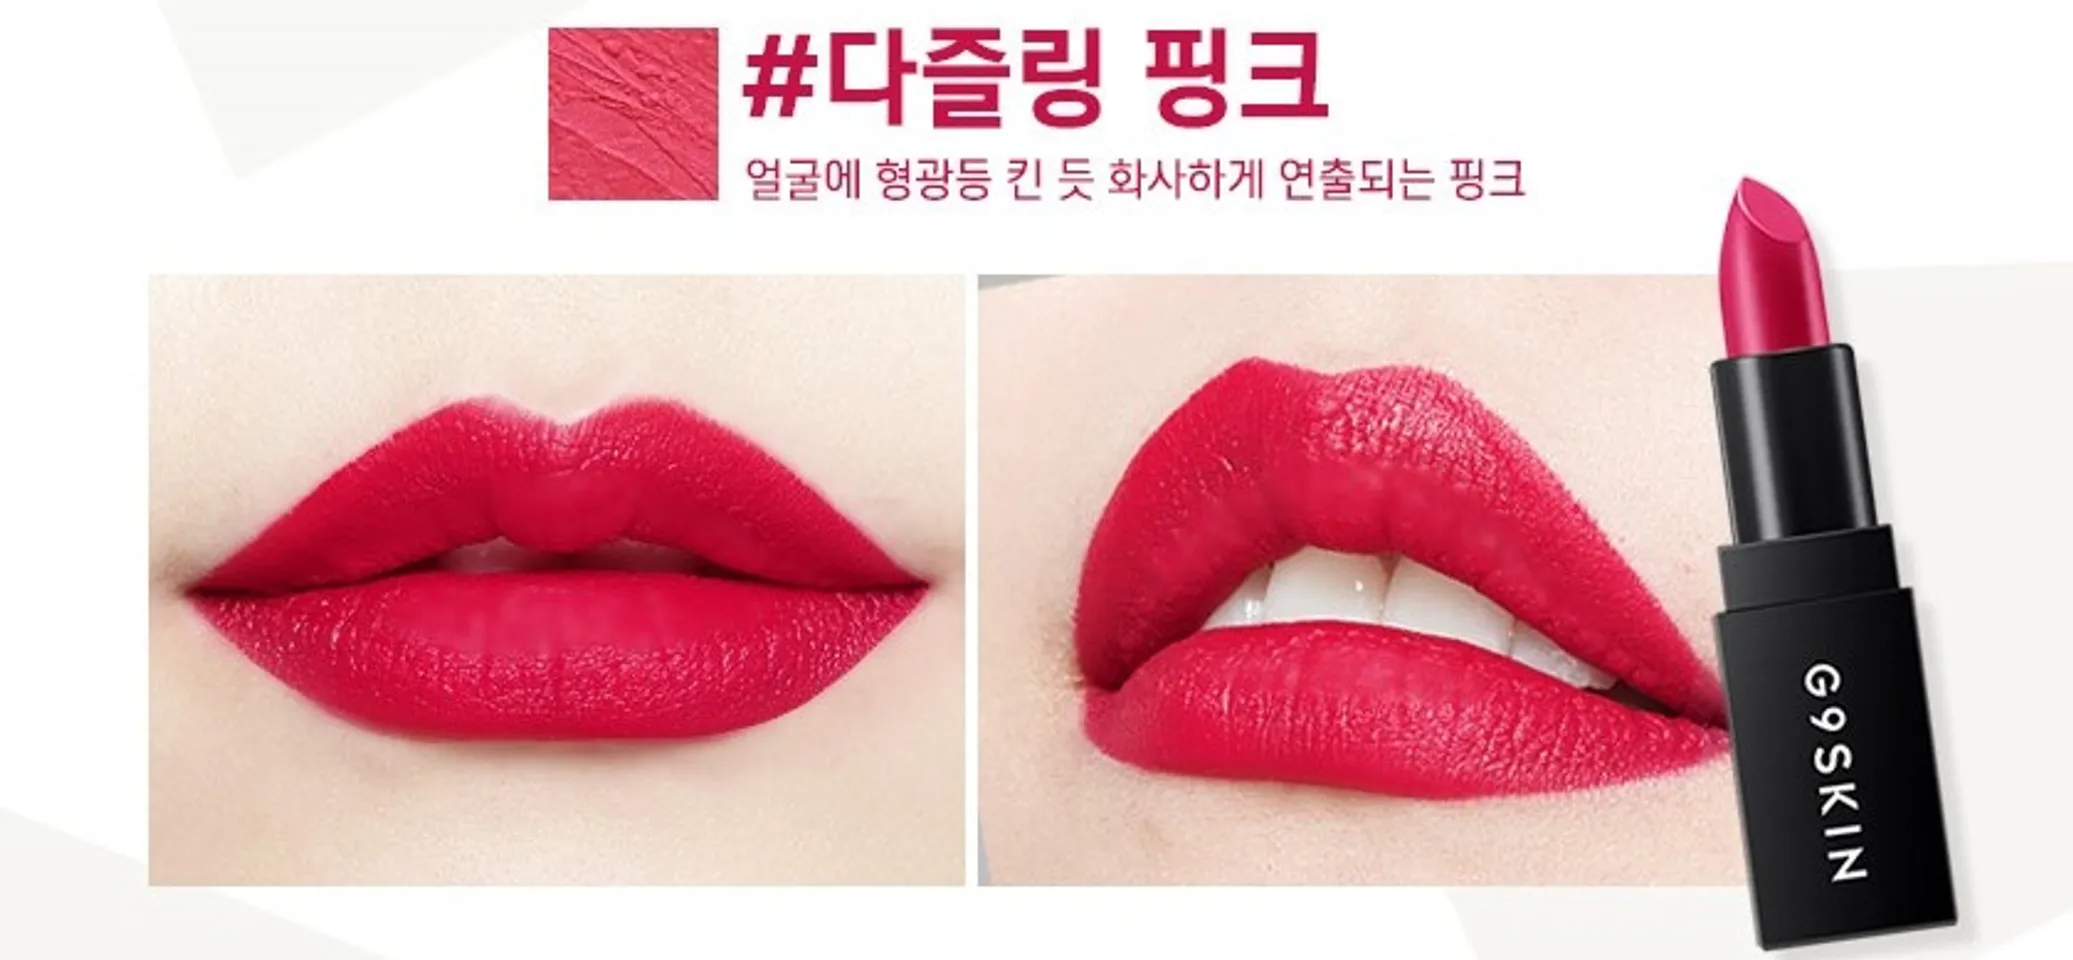 Son thỏi G9Skin First Lipstick 5 màu thời trang siêu hot 4